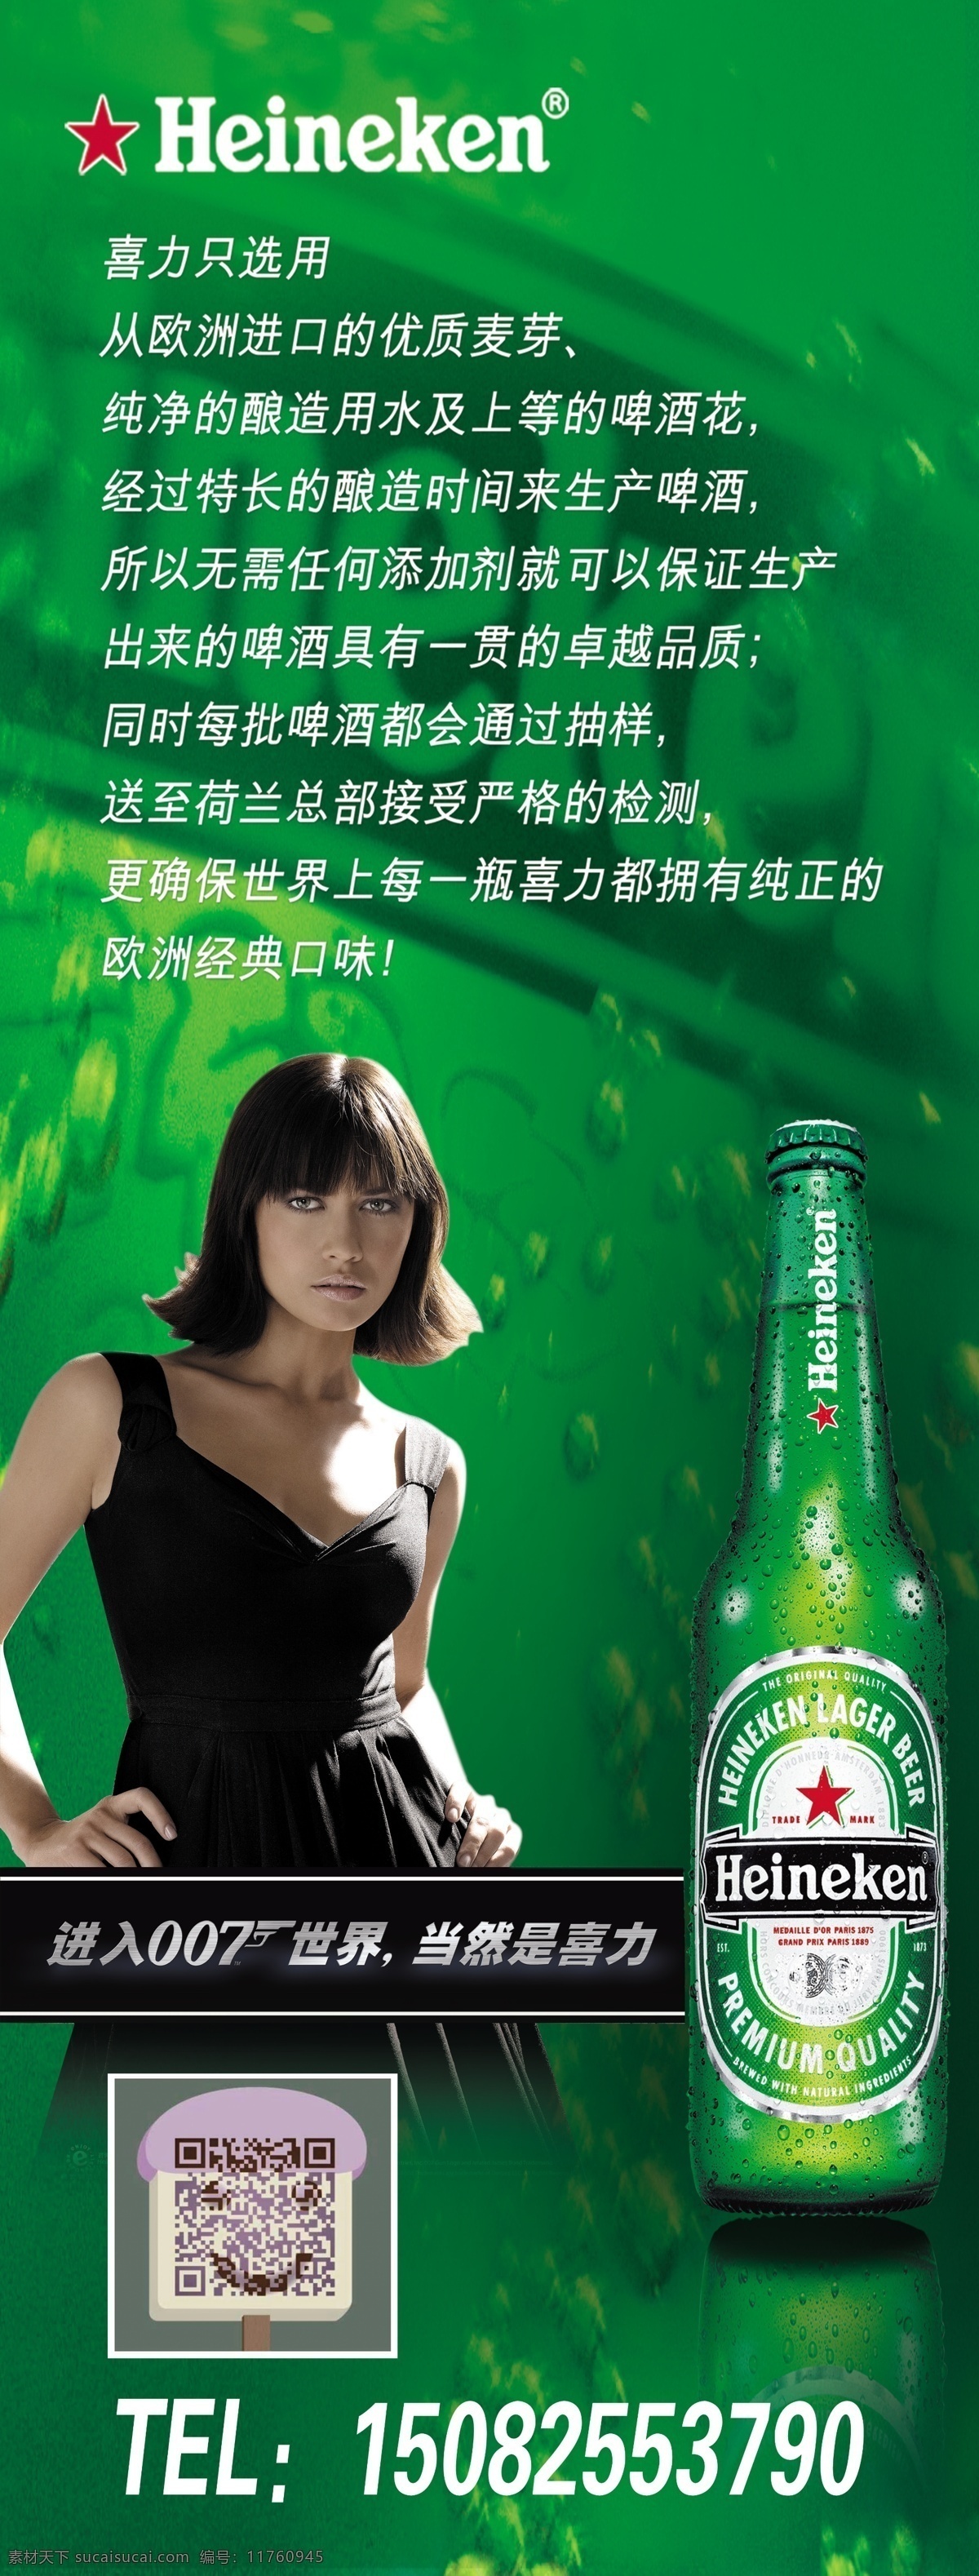 喜力啤酒海报 喜力标志 啤酒背景 啤酒瓶 美女